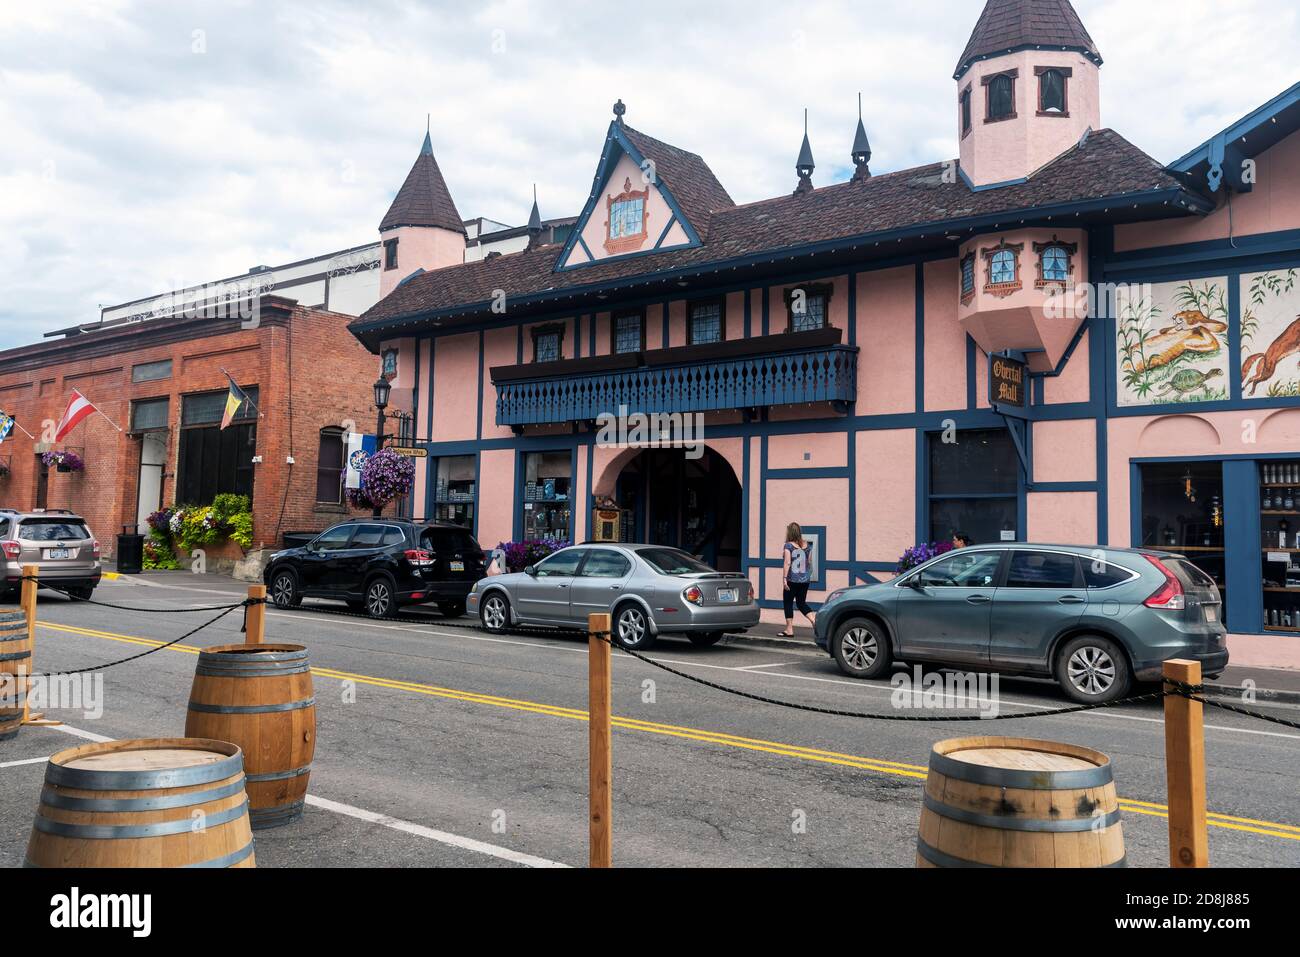 Leavenworth, Bavarian-styled village, Washington State, USA Stock Photo